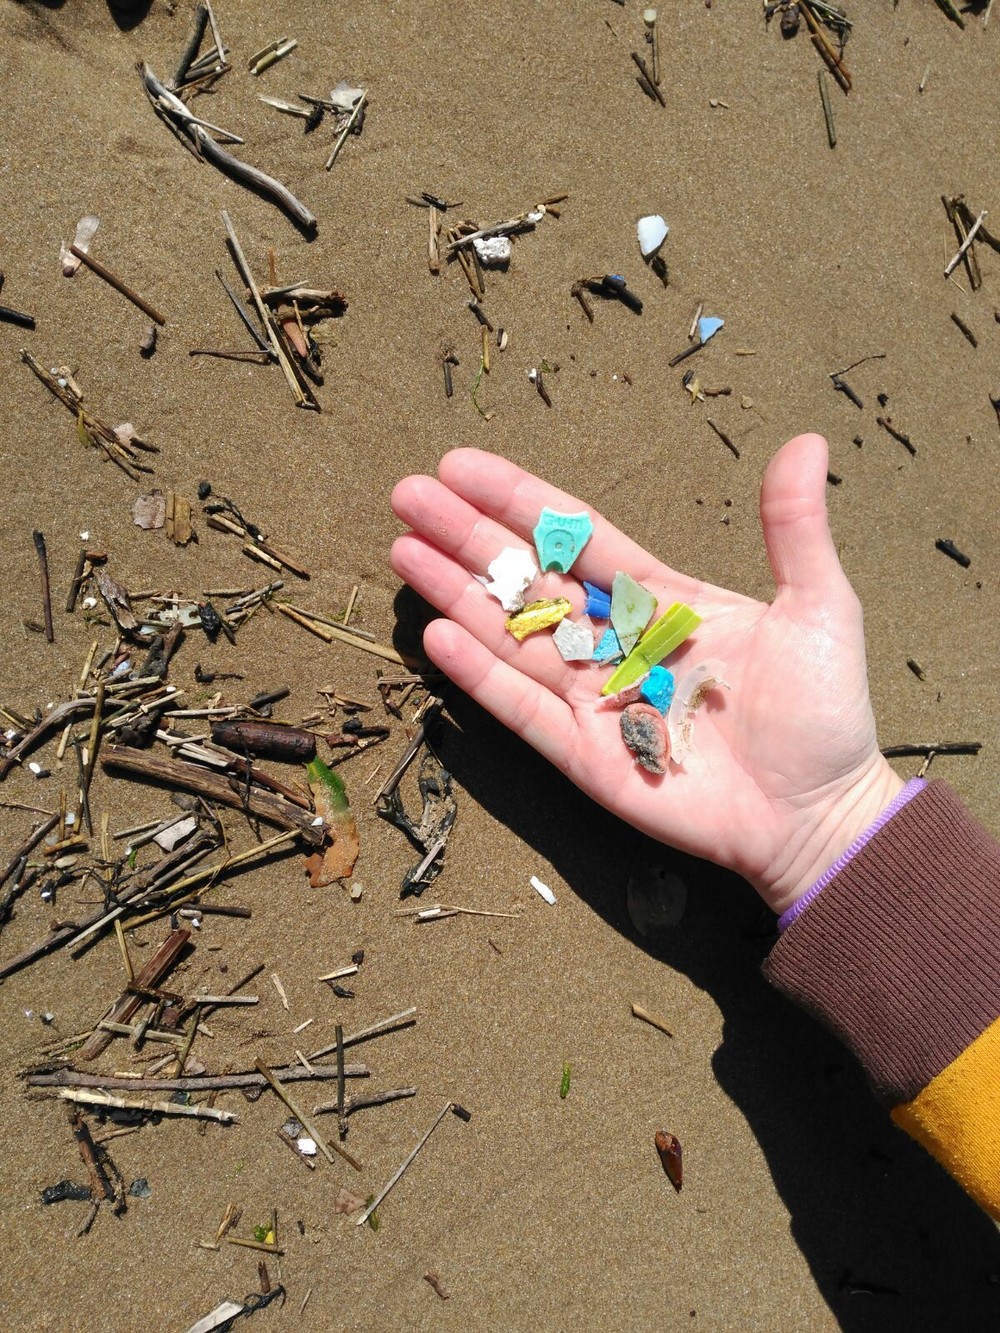 Пластиковые отходы и другой мусор в море